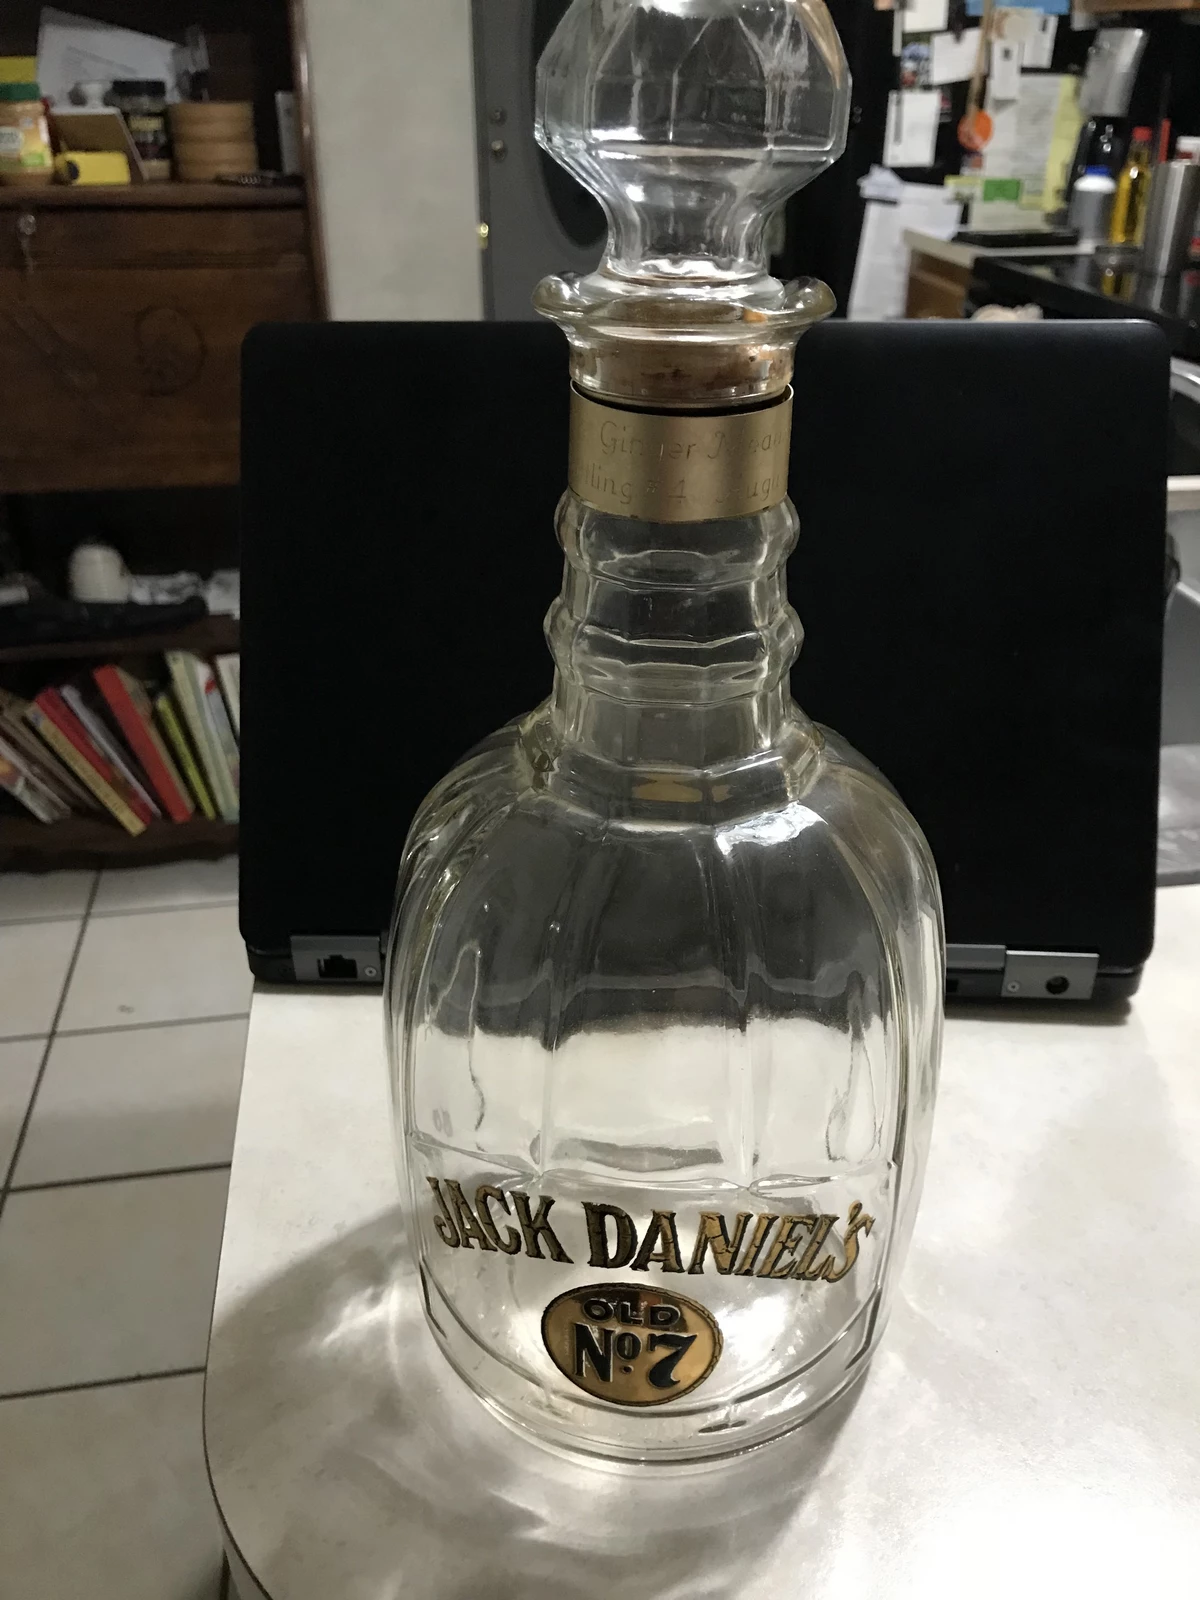 Jack Daniels Old No. 7 Whiskey Decanter Bottle